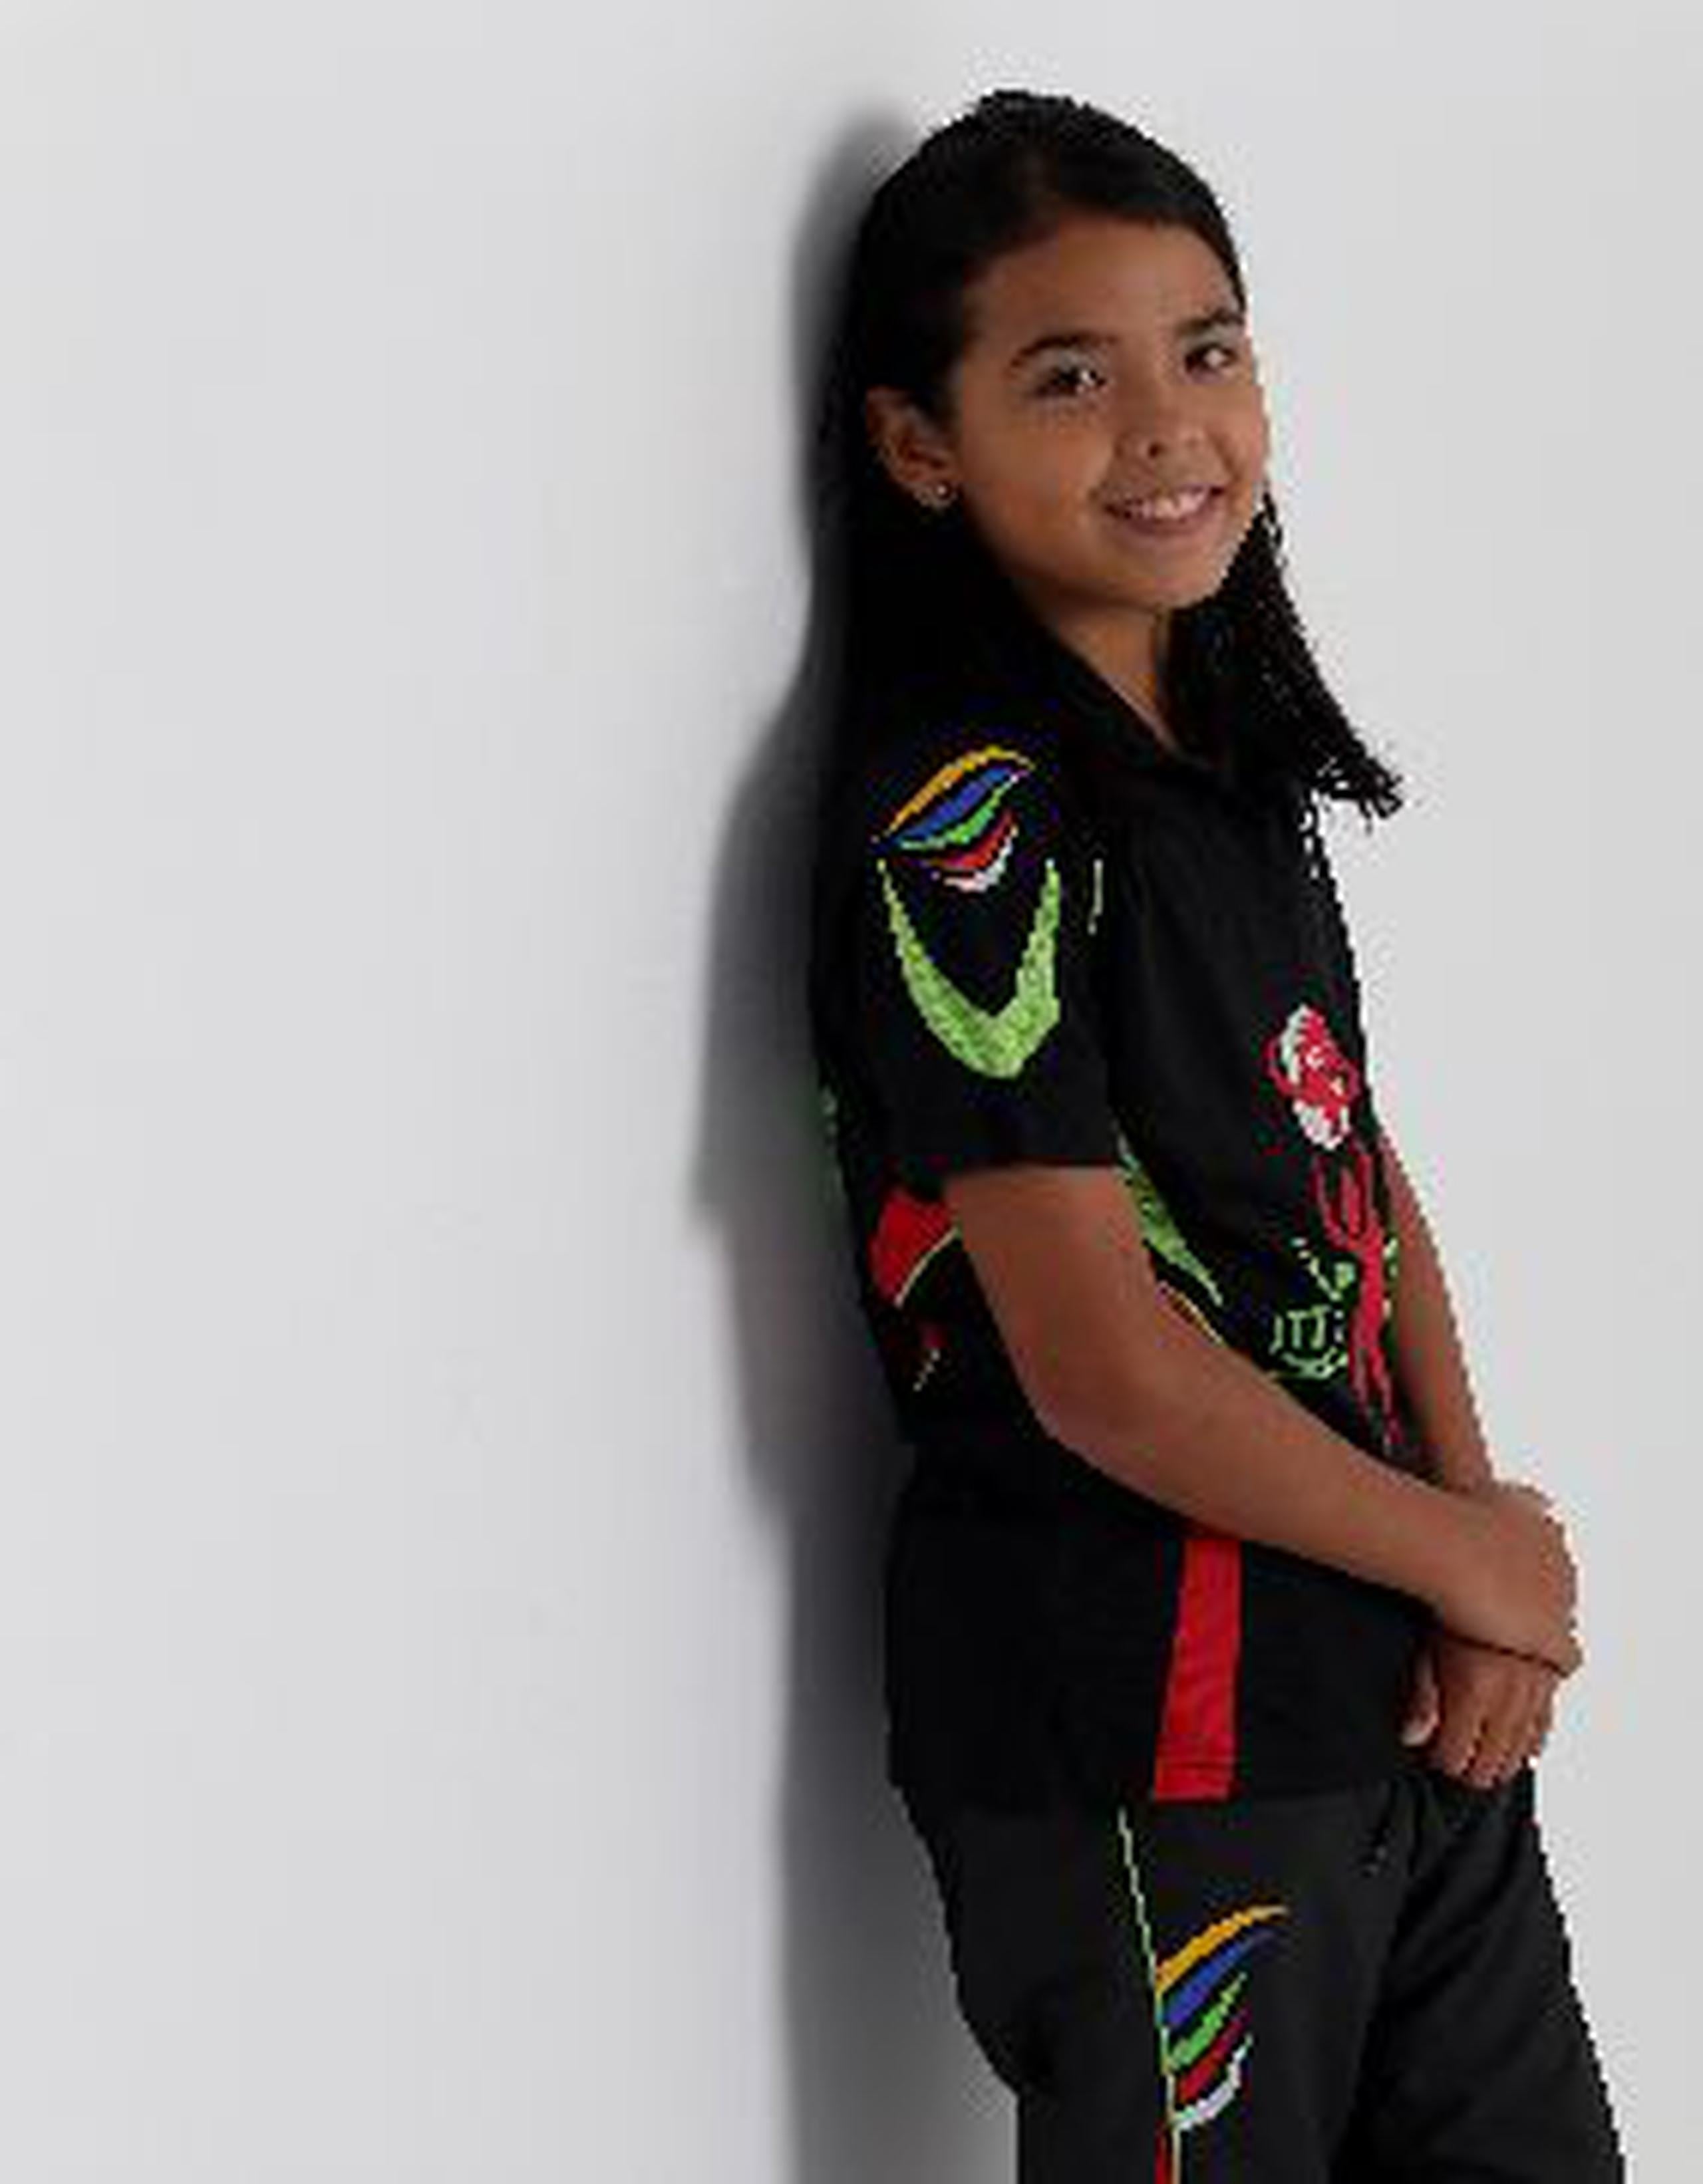 Con tan solo 11 años de edad, Adriana Díaz es la campeona nacional adulta de tenis de mesa y está clasificada entre las mejores a nivel internacional. (teresa.canino@gfrmedia.com)